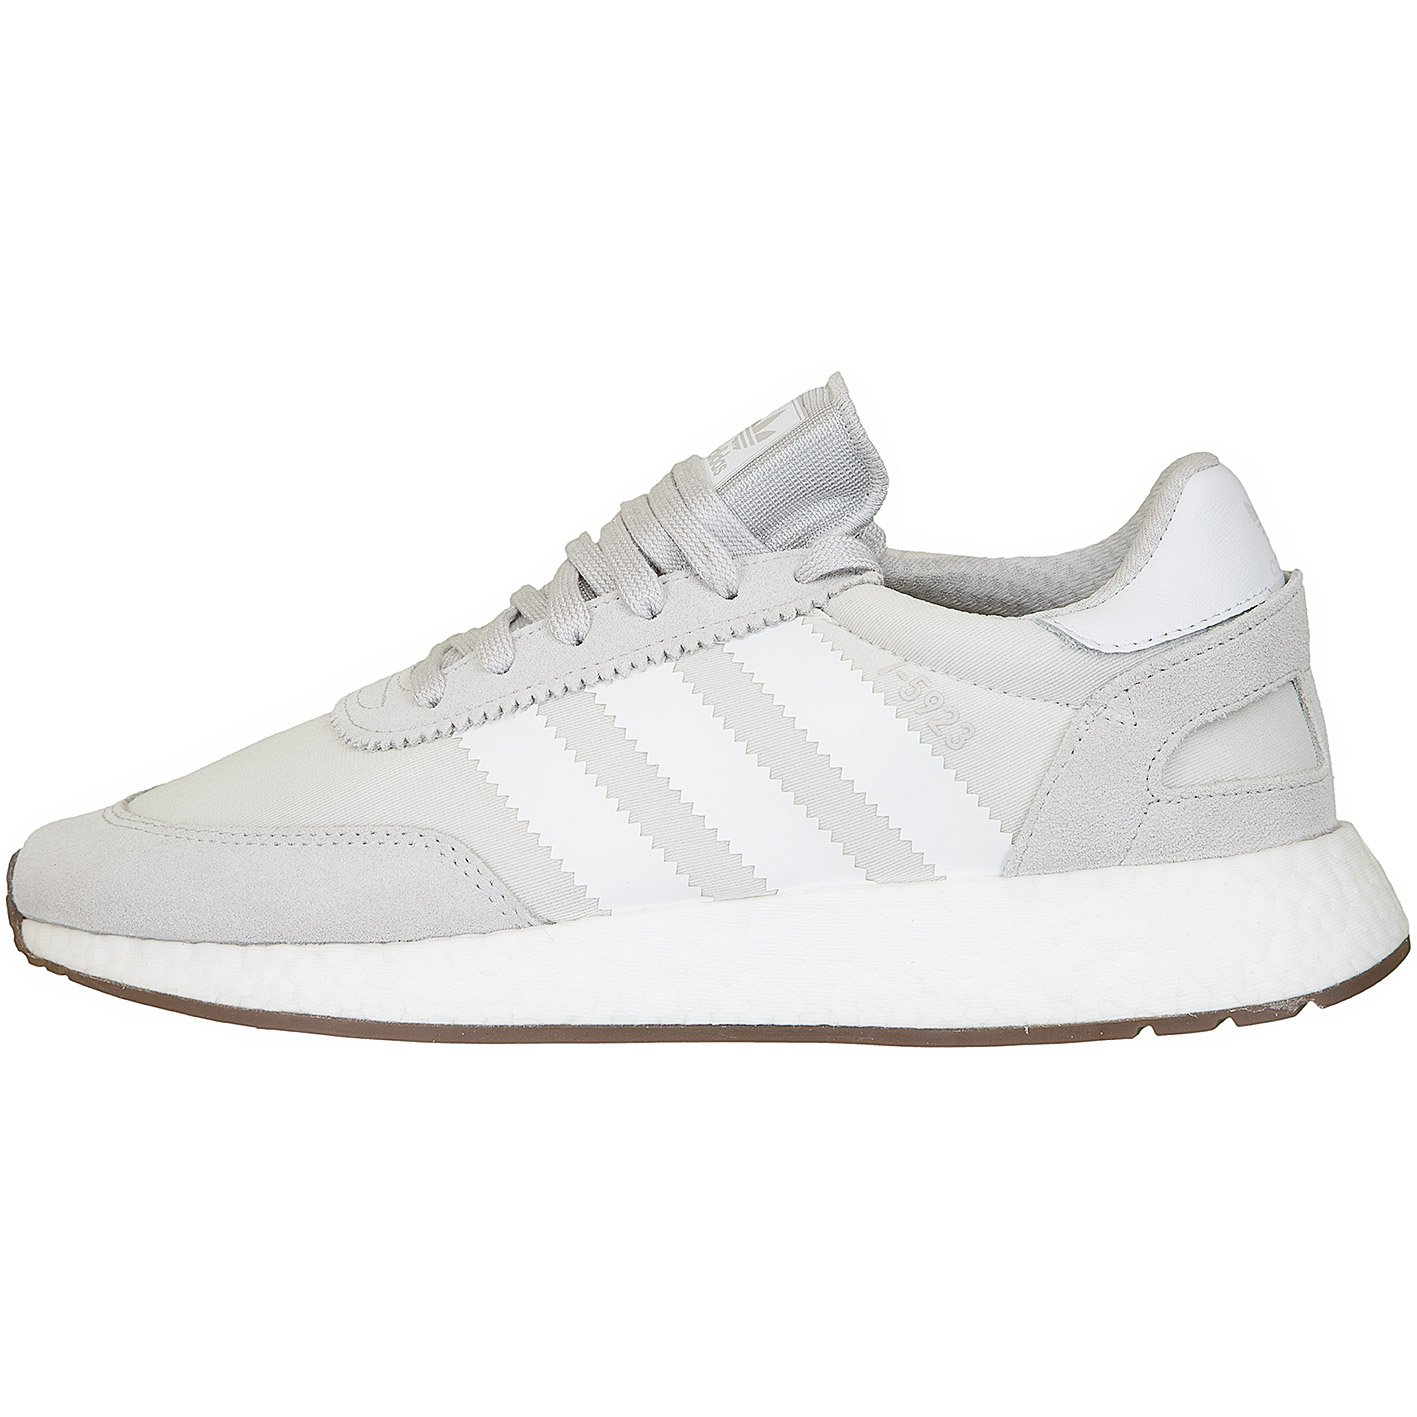 ☆ Adidas Originals Sneaker I-5923 grau/weiß - hier bestellen!